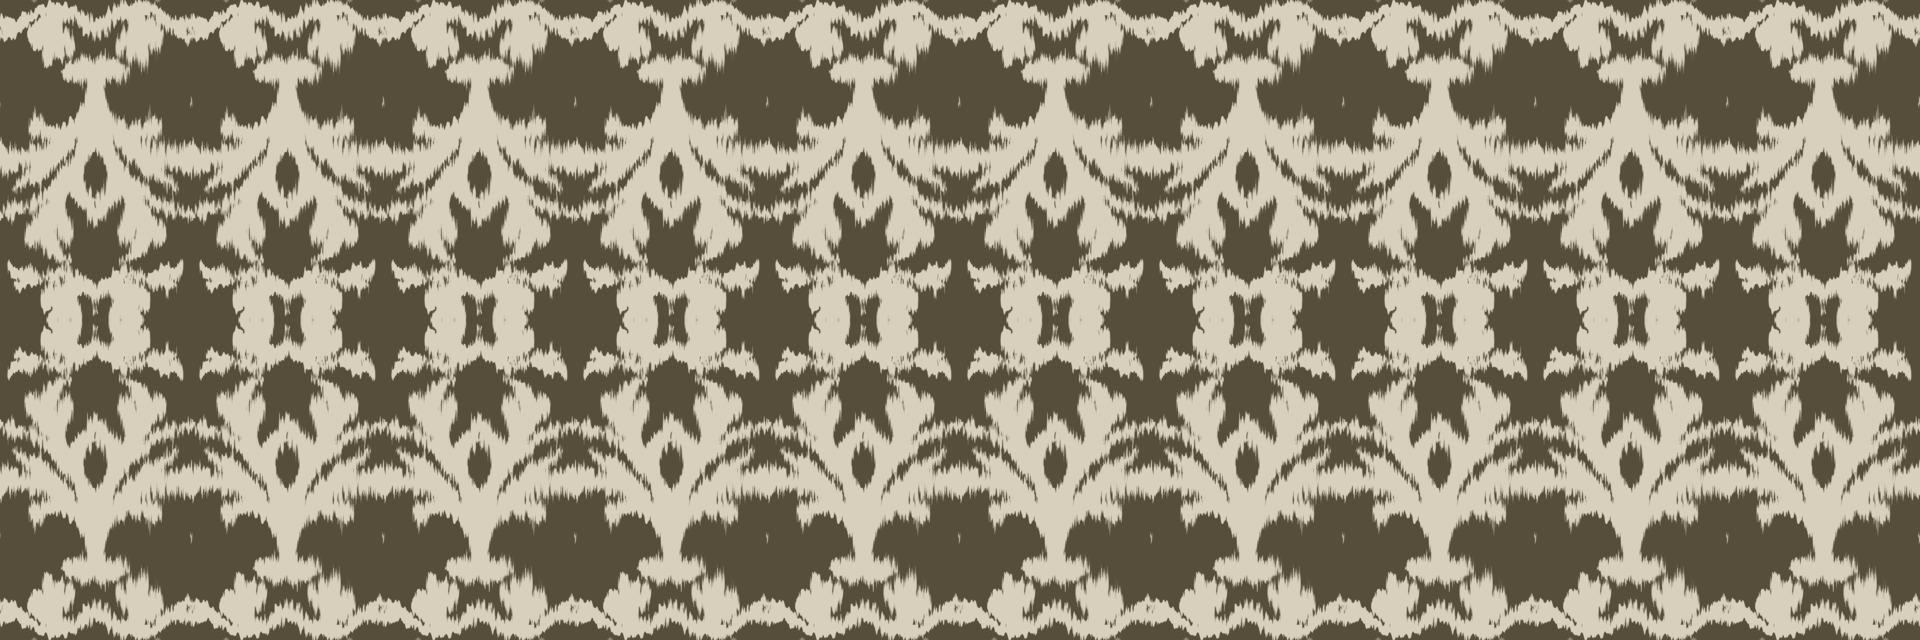 étnico ikat listra batik têxtil sem costura padrão design de vetor digital para impressão saree kurti borneo tecido borda escova símbolos amostras algodão